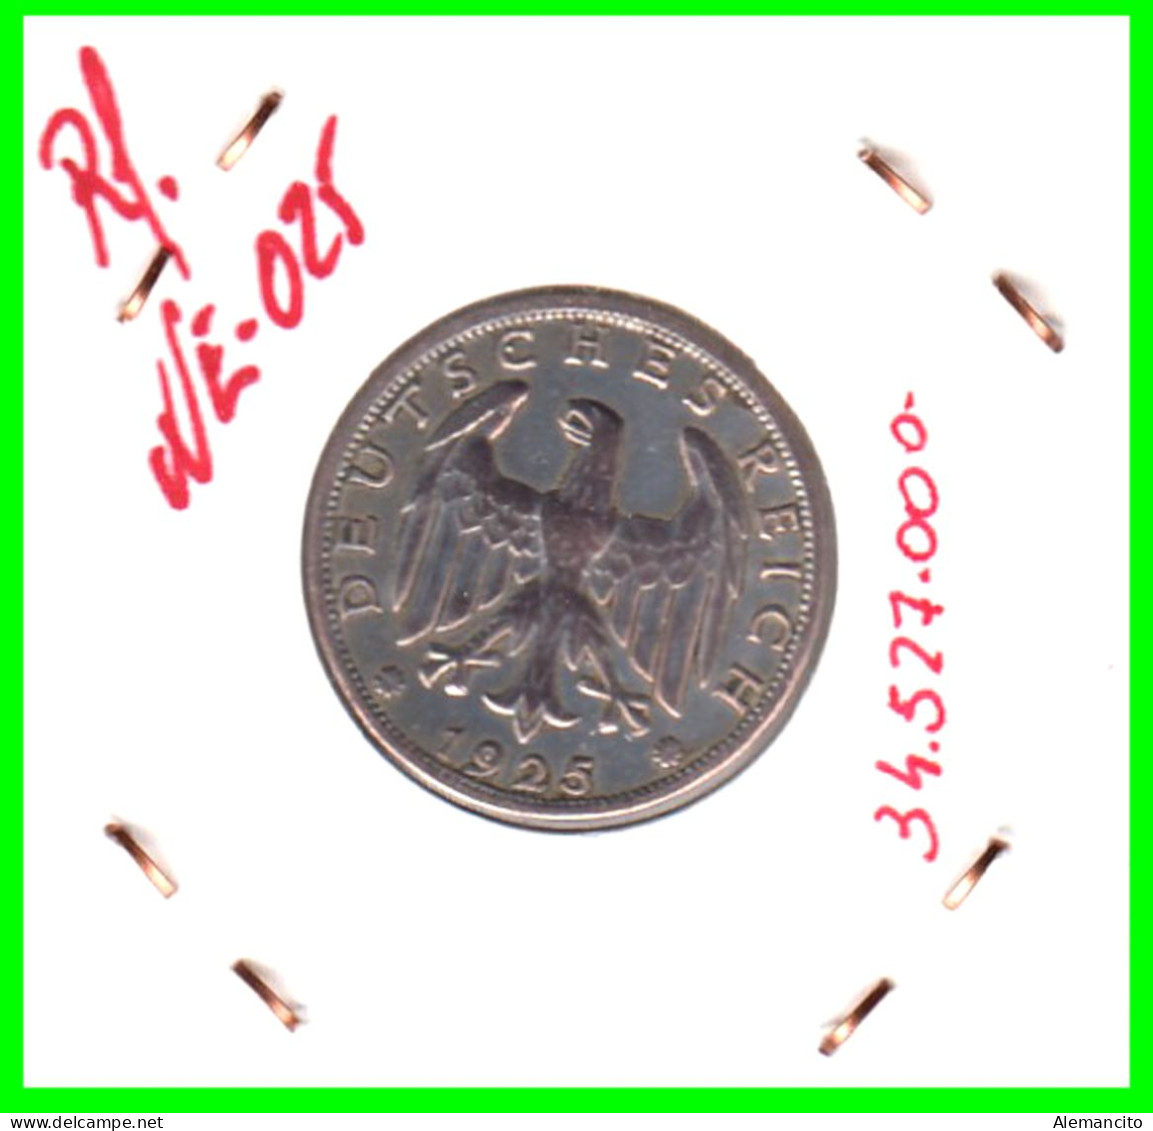 GERMANY REPÚBLICA DE WEIMAR 1 MARK ( 1925 CECA - A )  ( DEUTSCHES REICHSMARK KM # 44 ) - 1 Mark & 1 Reichsmark